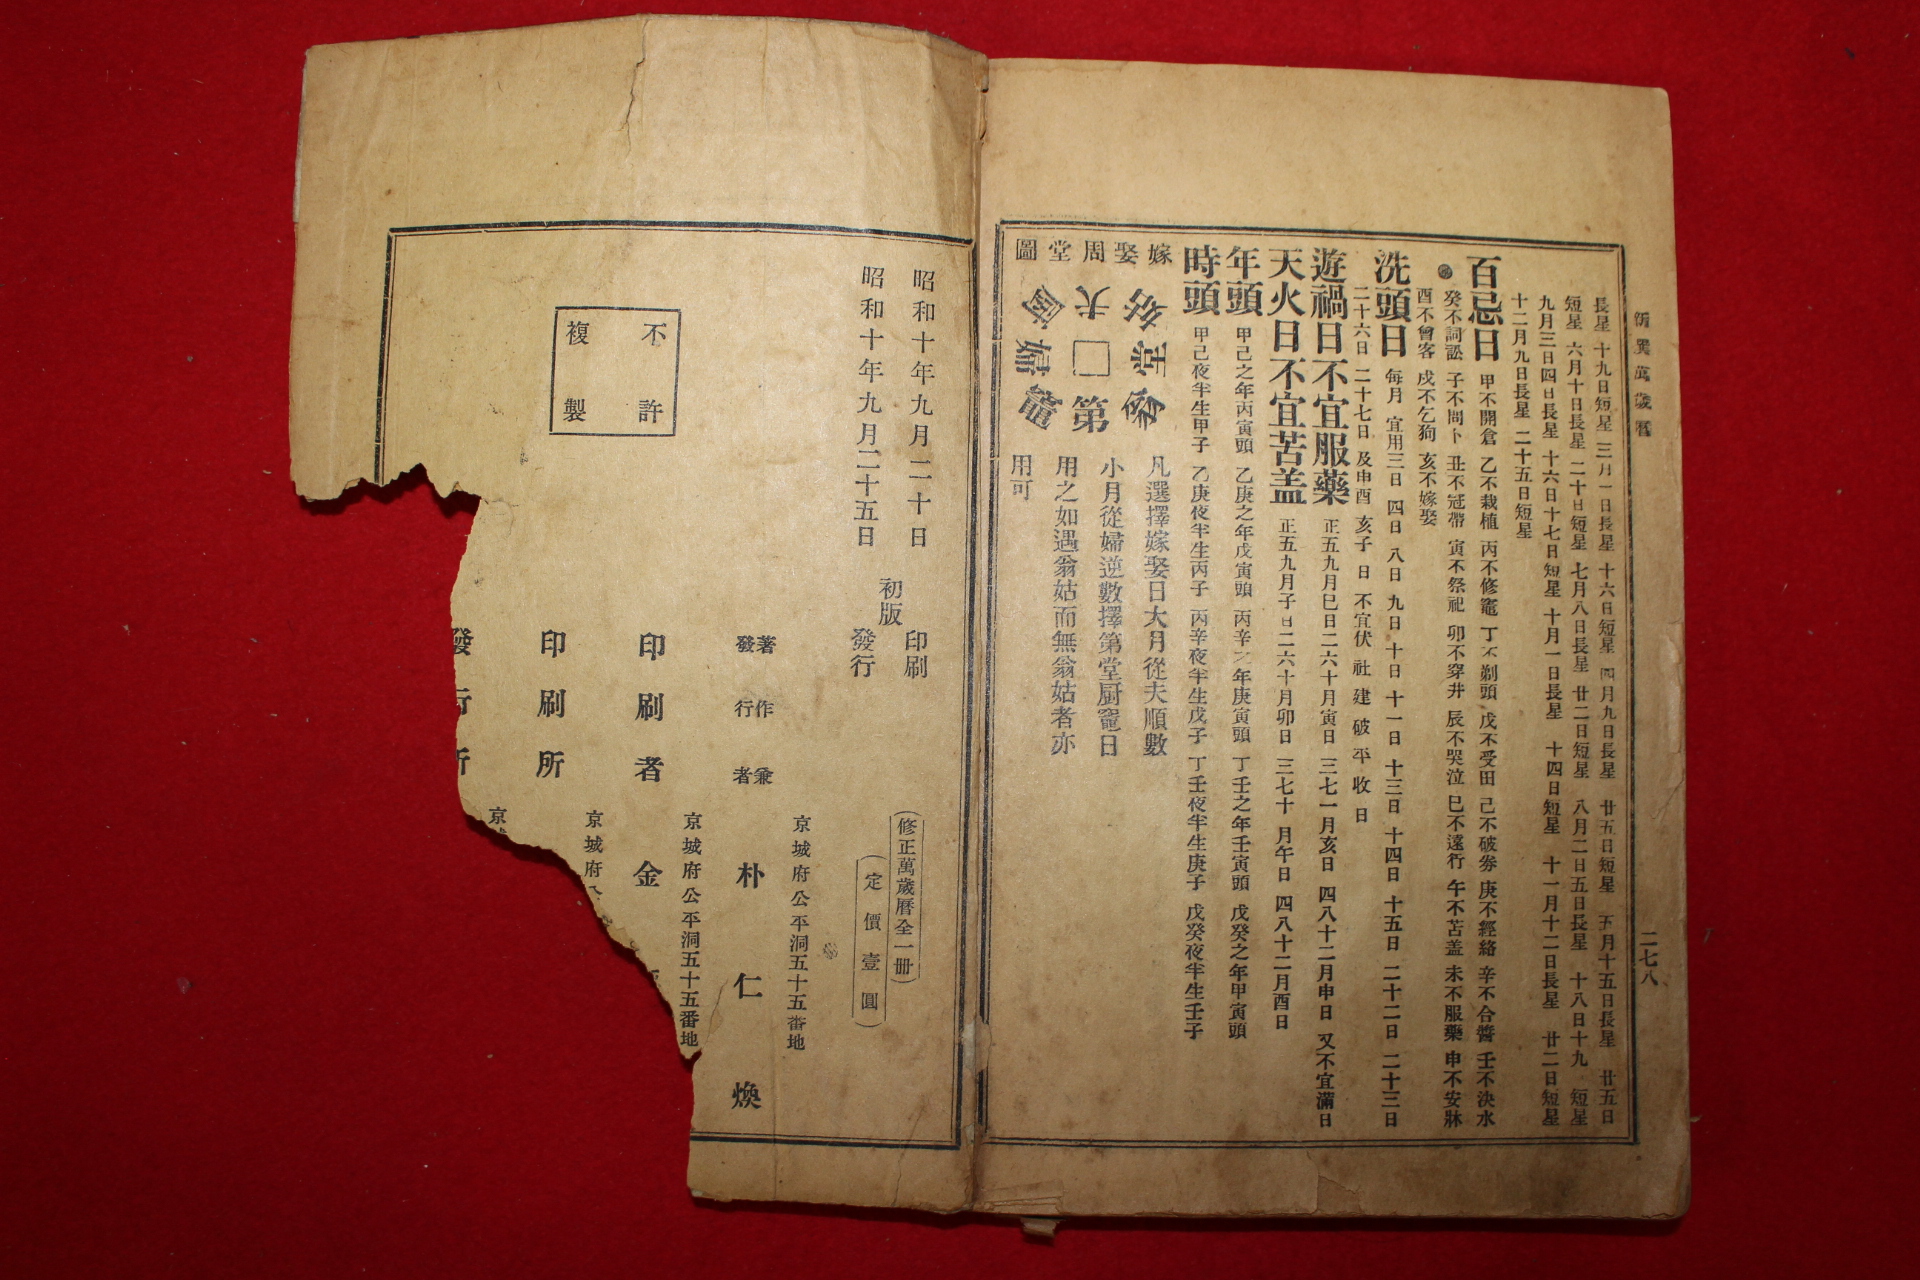 1935년 박인환(朴仁煥) 수정 신선만세력(新選萬歲曆)